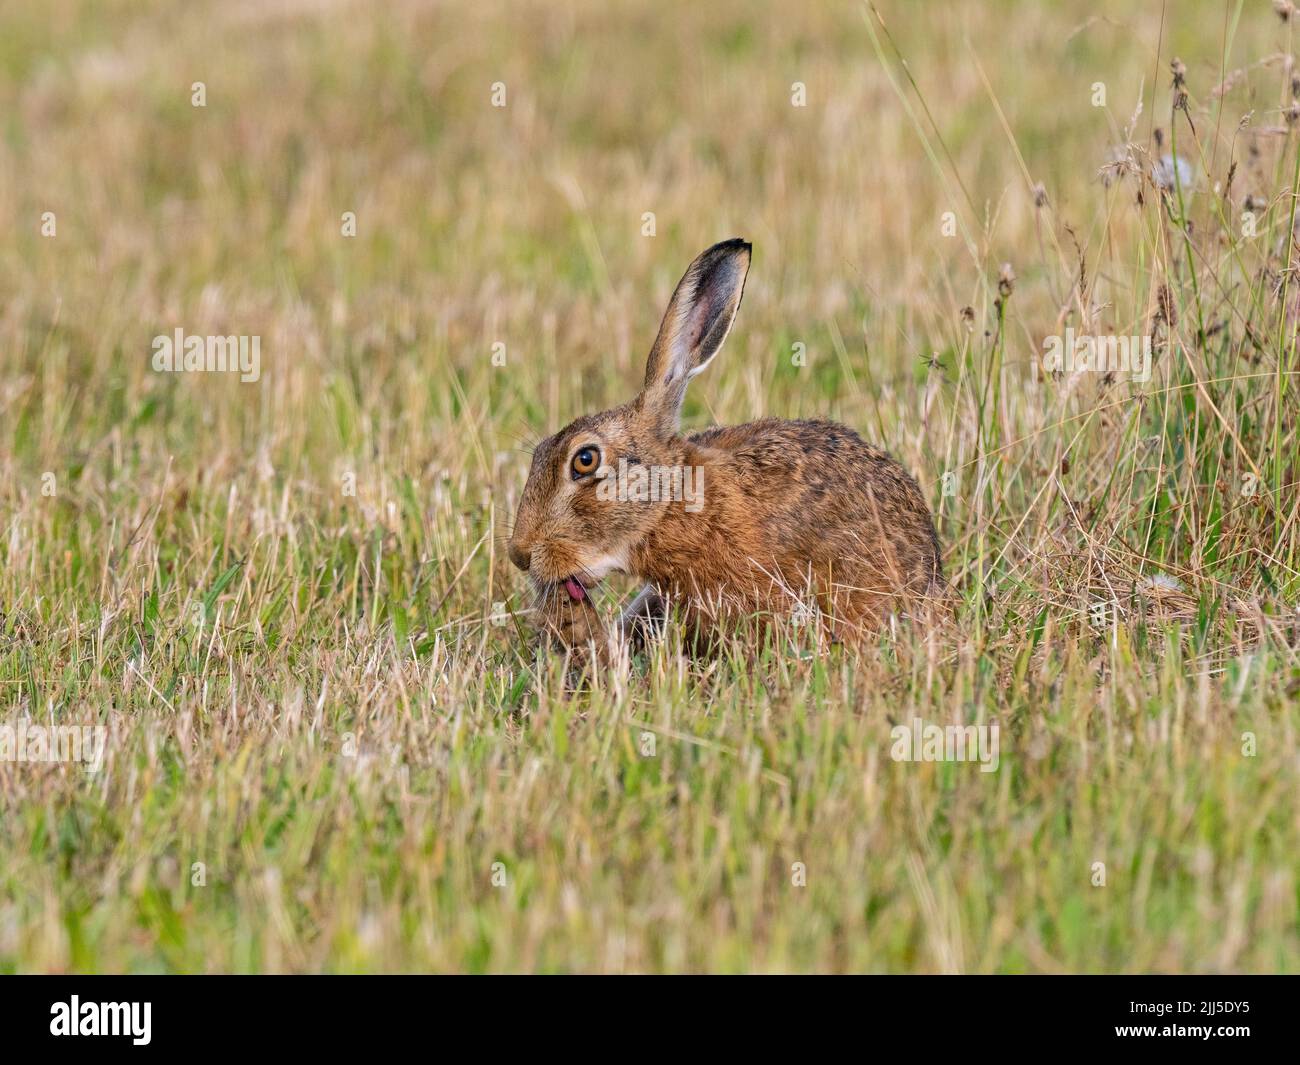 Brown Liebre Lepus europaeus comiendo hierba en pastoreo meadow Foto de stock